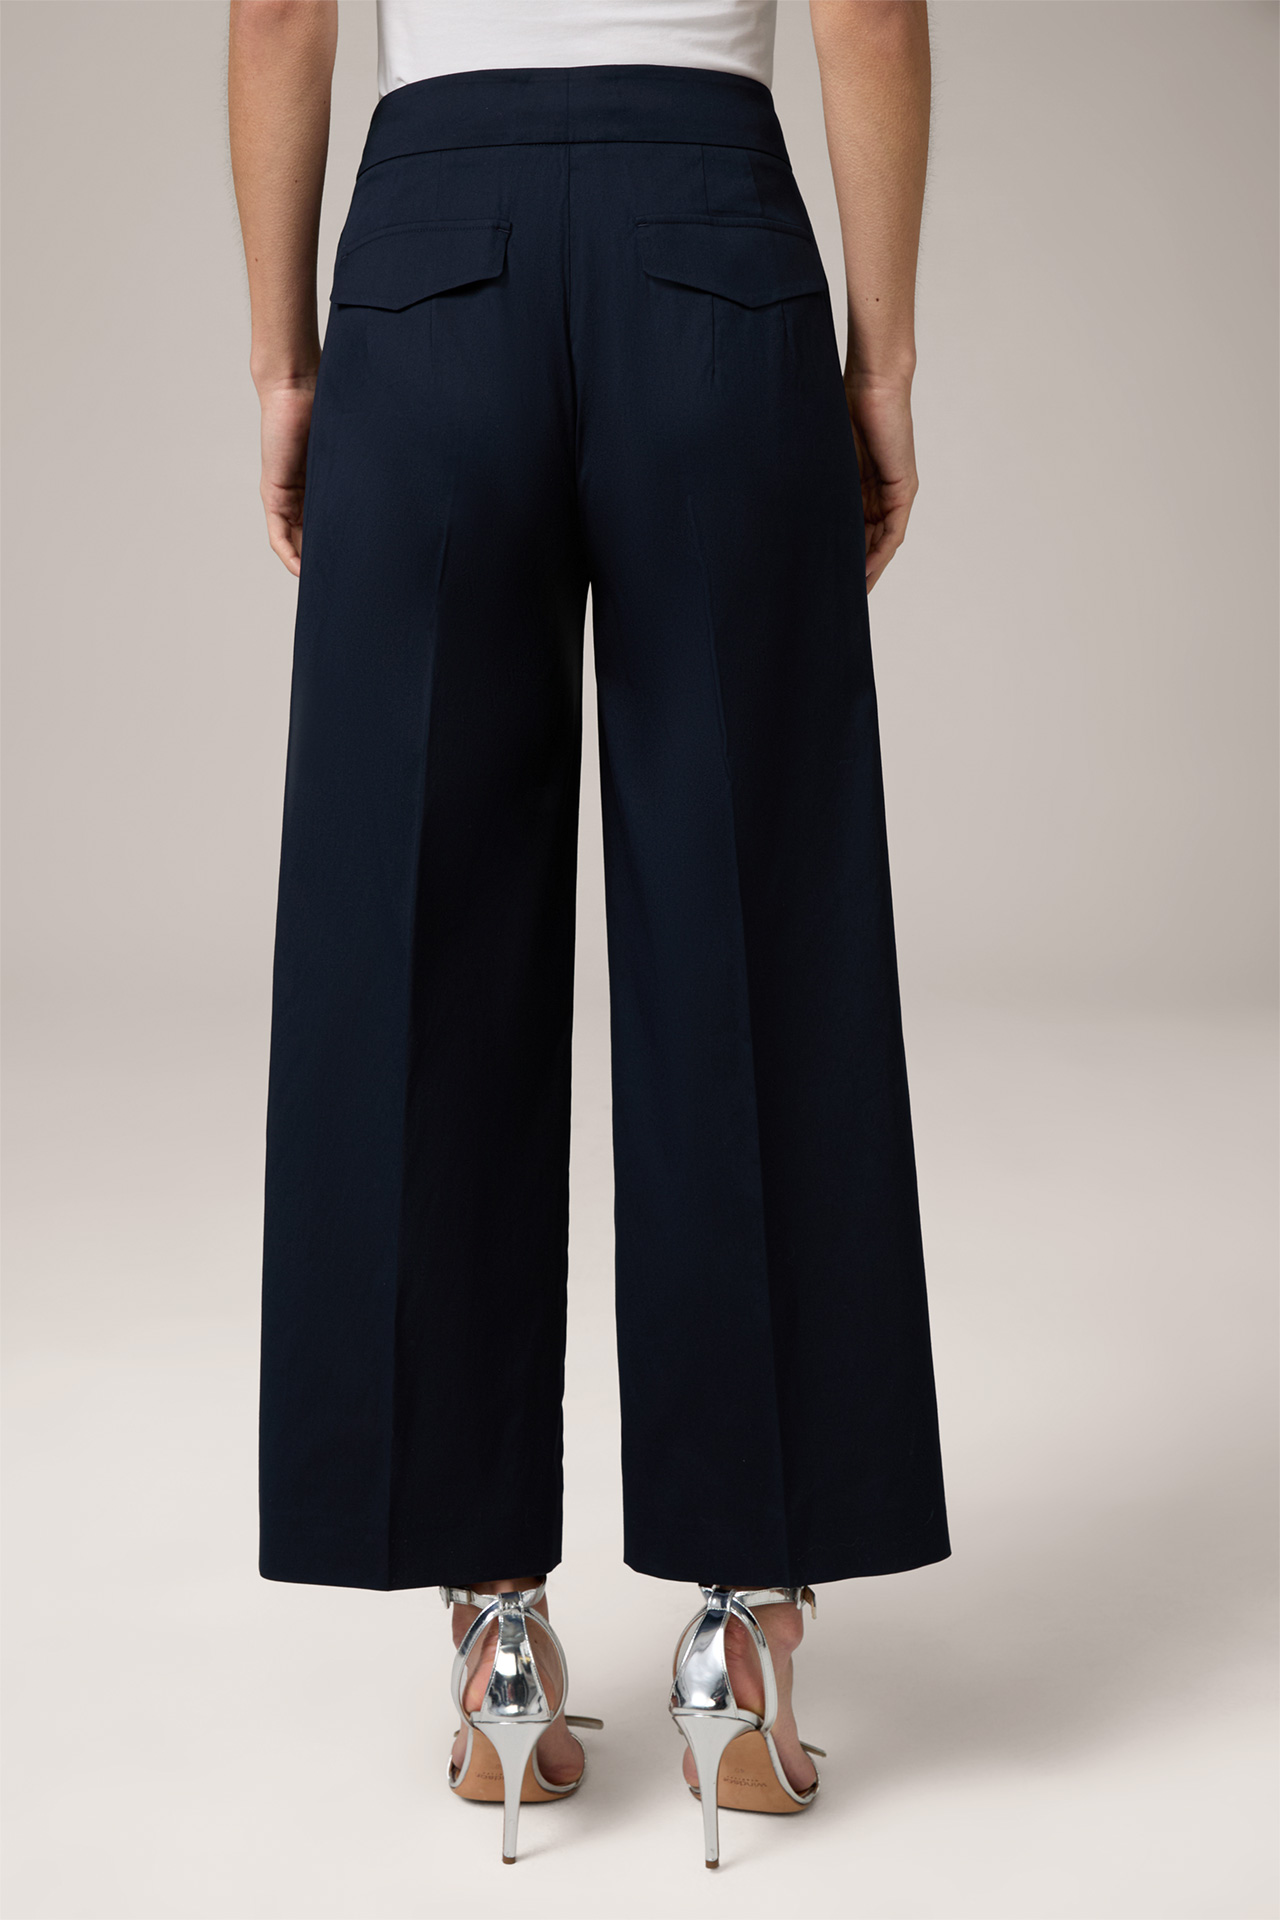 Pantalon Marlene court bleu marine en coton stretch